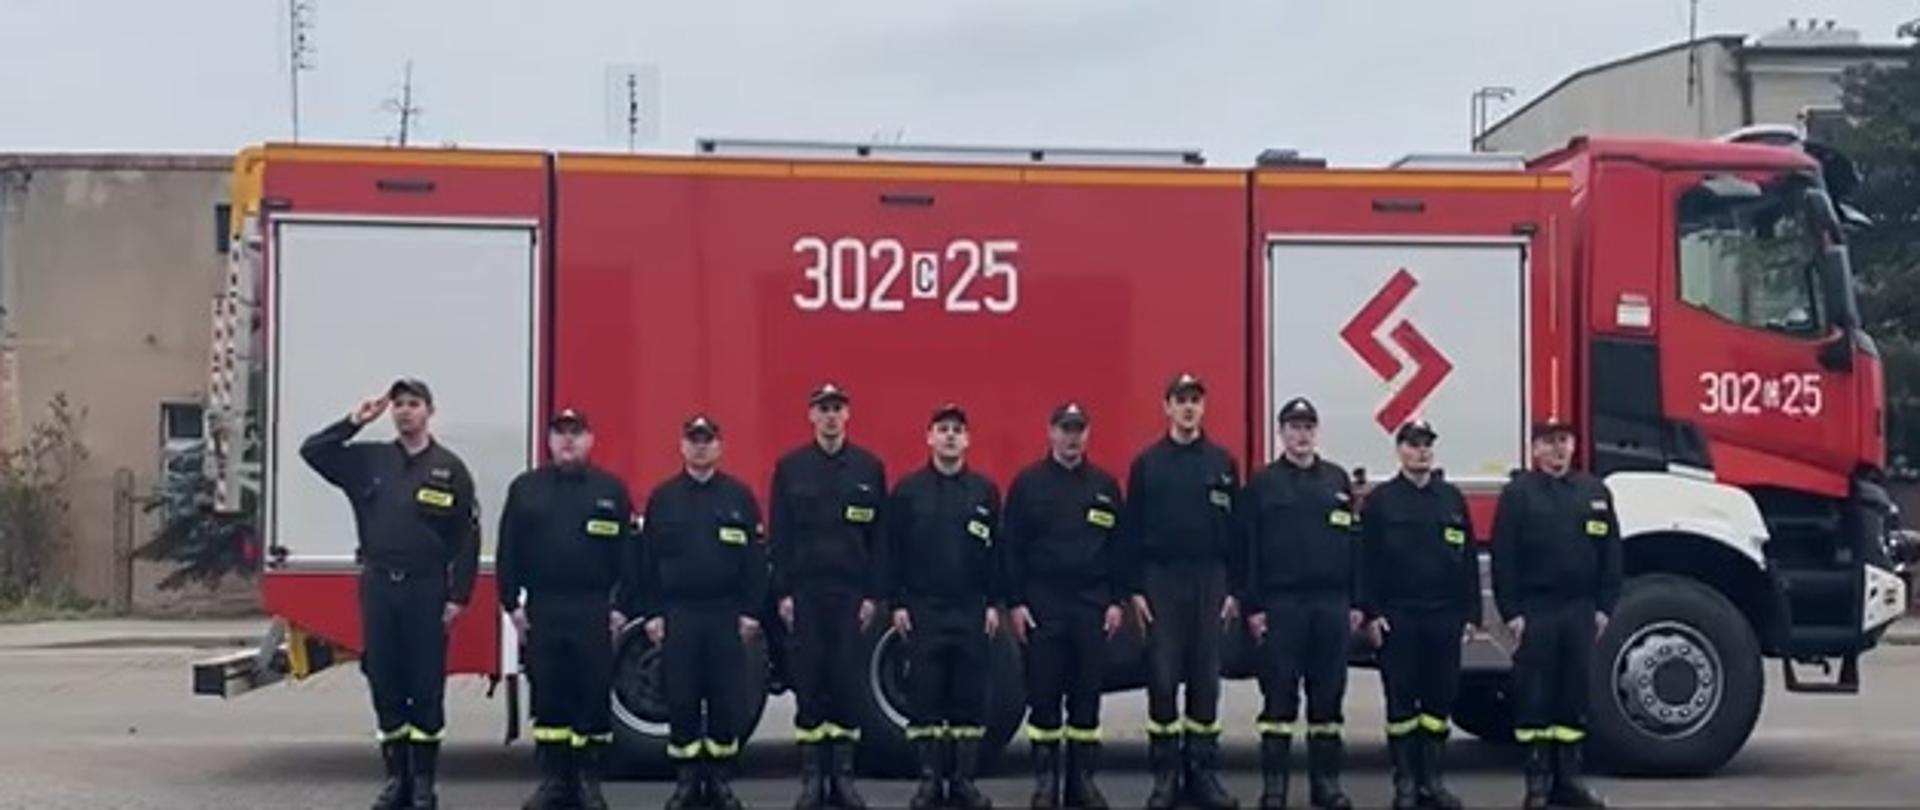 Zbiórka na placu zewnętrznym JRG2 w Bydgoszczy, strażacy w szeregu w czarnych ubraniach koszarowych, za nimi stojący bokiem czerwony samochód pożarniczy. 